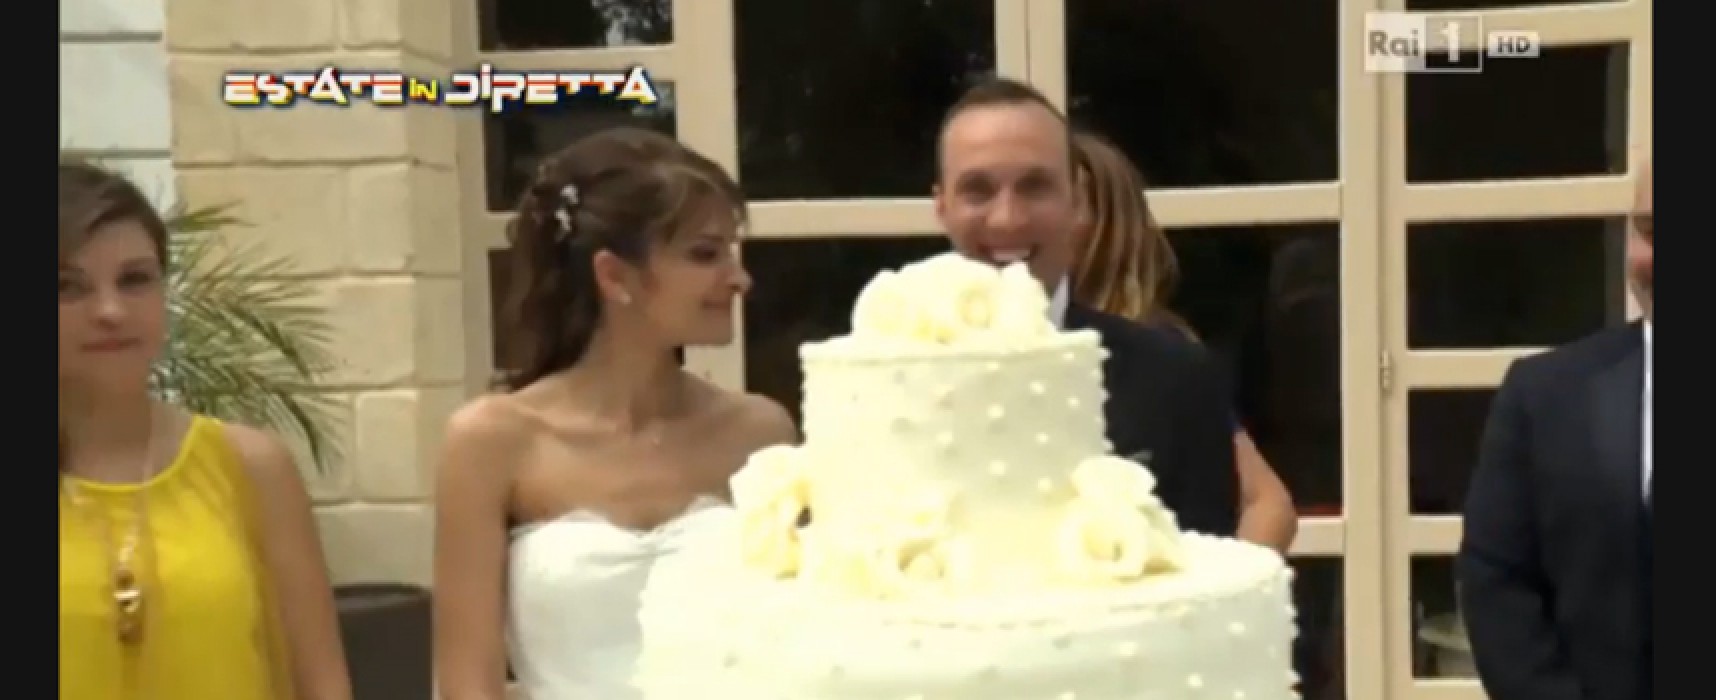 Il matrimonio dei biscegliesi Sergio e Mariagrazia su Rai 1: ecco il VIDEO